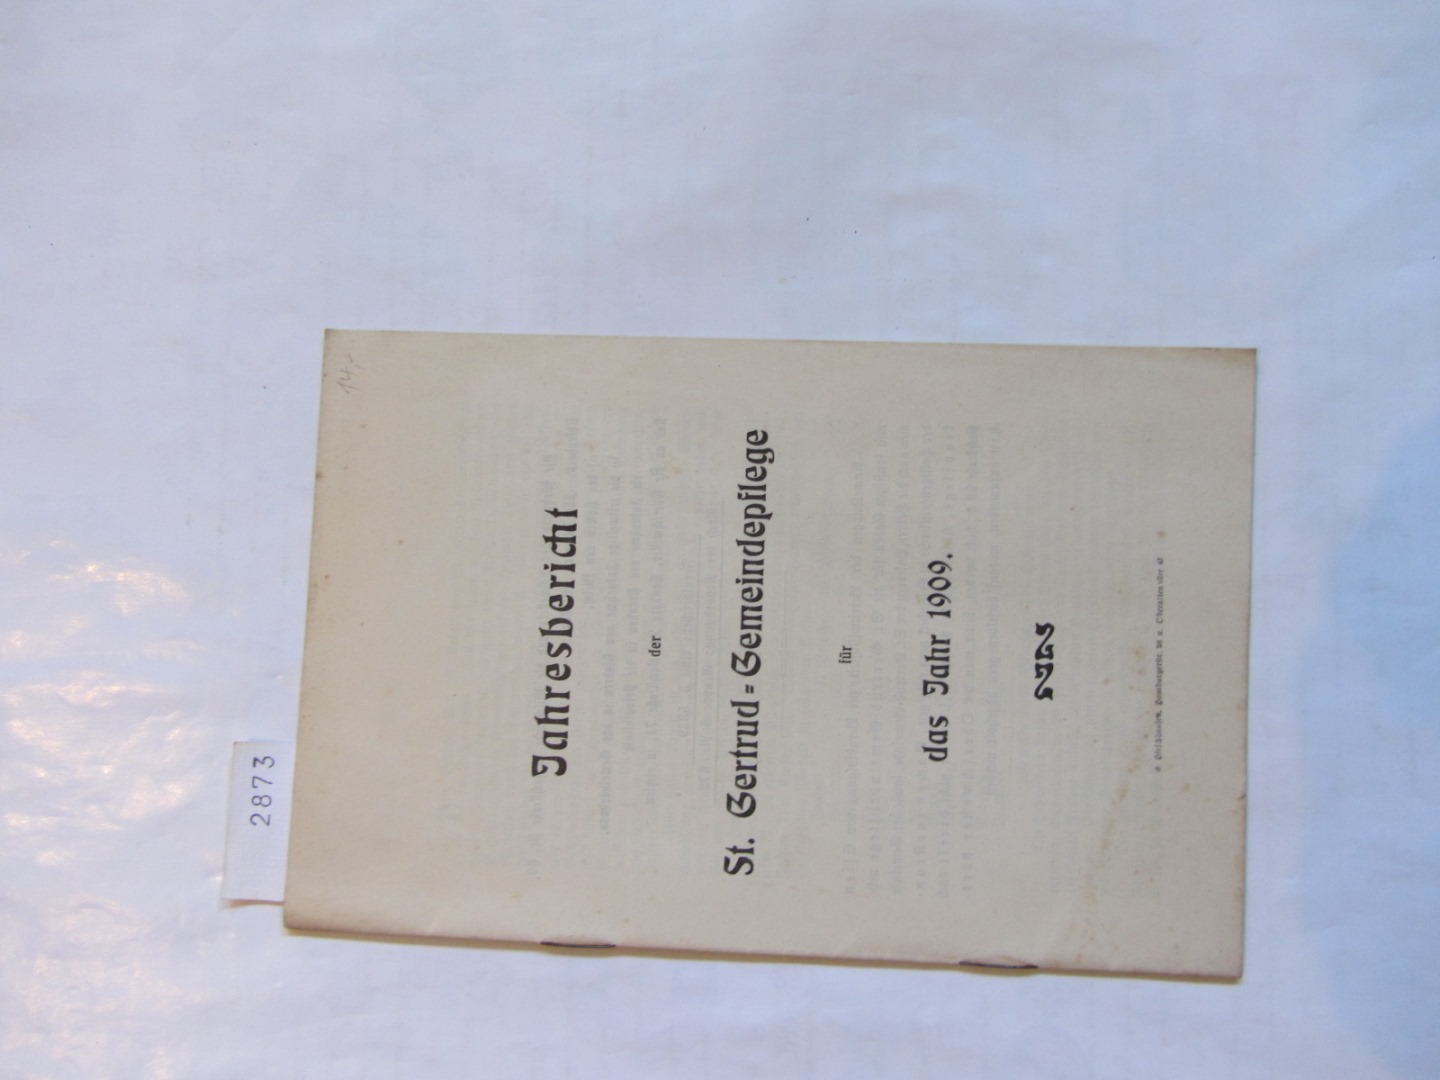   Jahresbericht der St. Gertrud-Gemeindpflege für das Jahr 1909. 